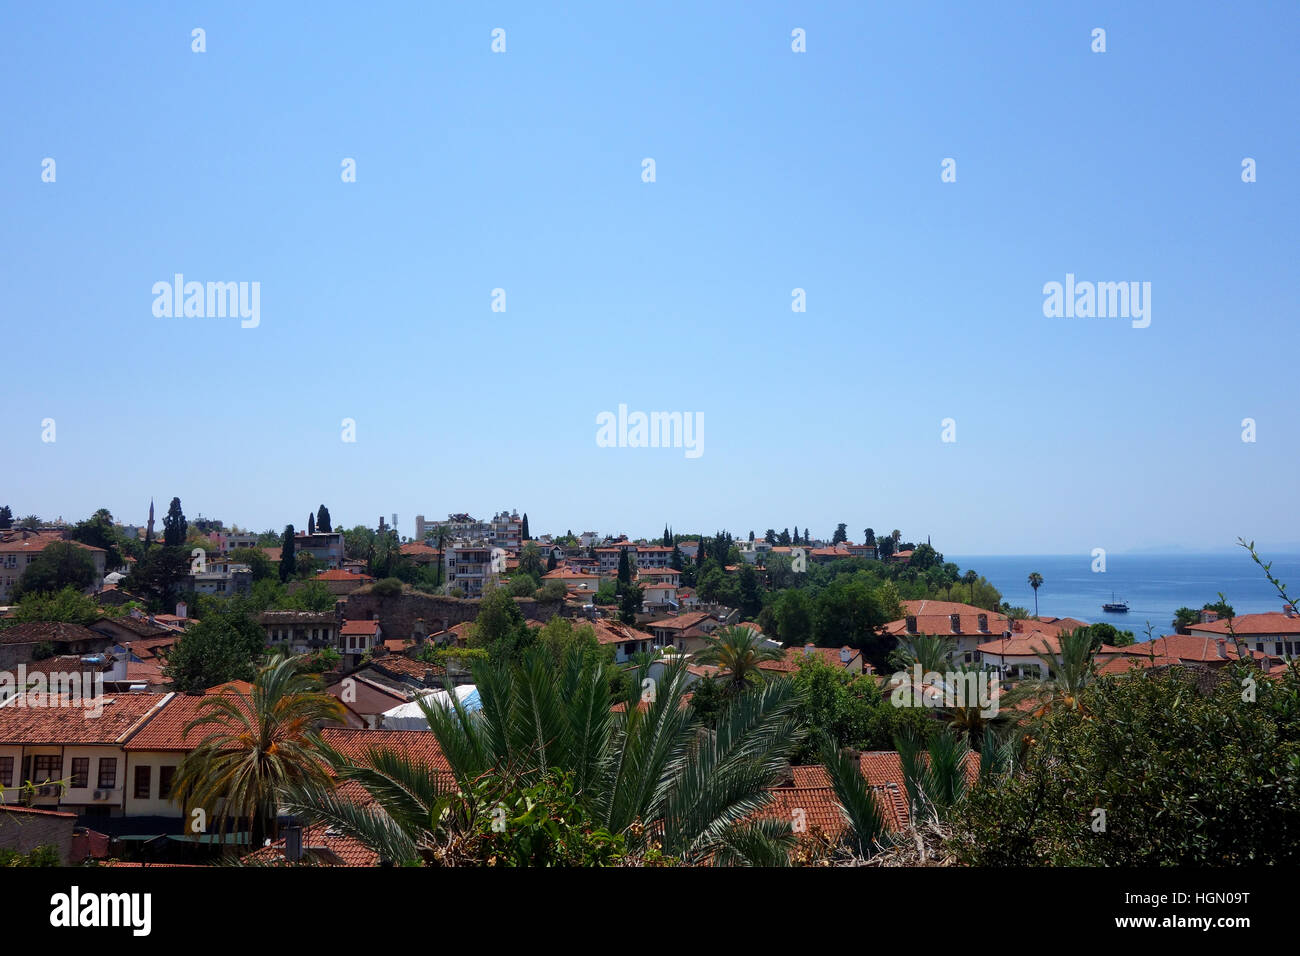 Vieille ville d'Antalya, vue d'en haut Banque D'Images